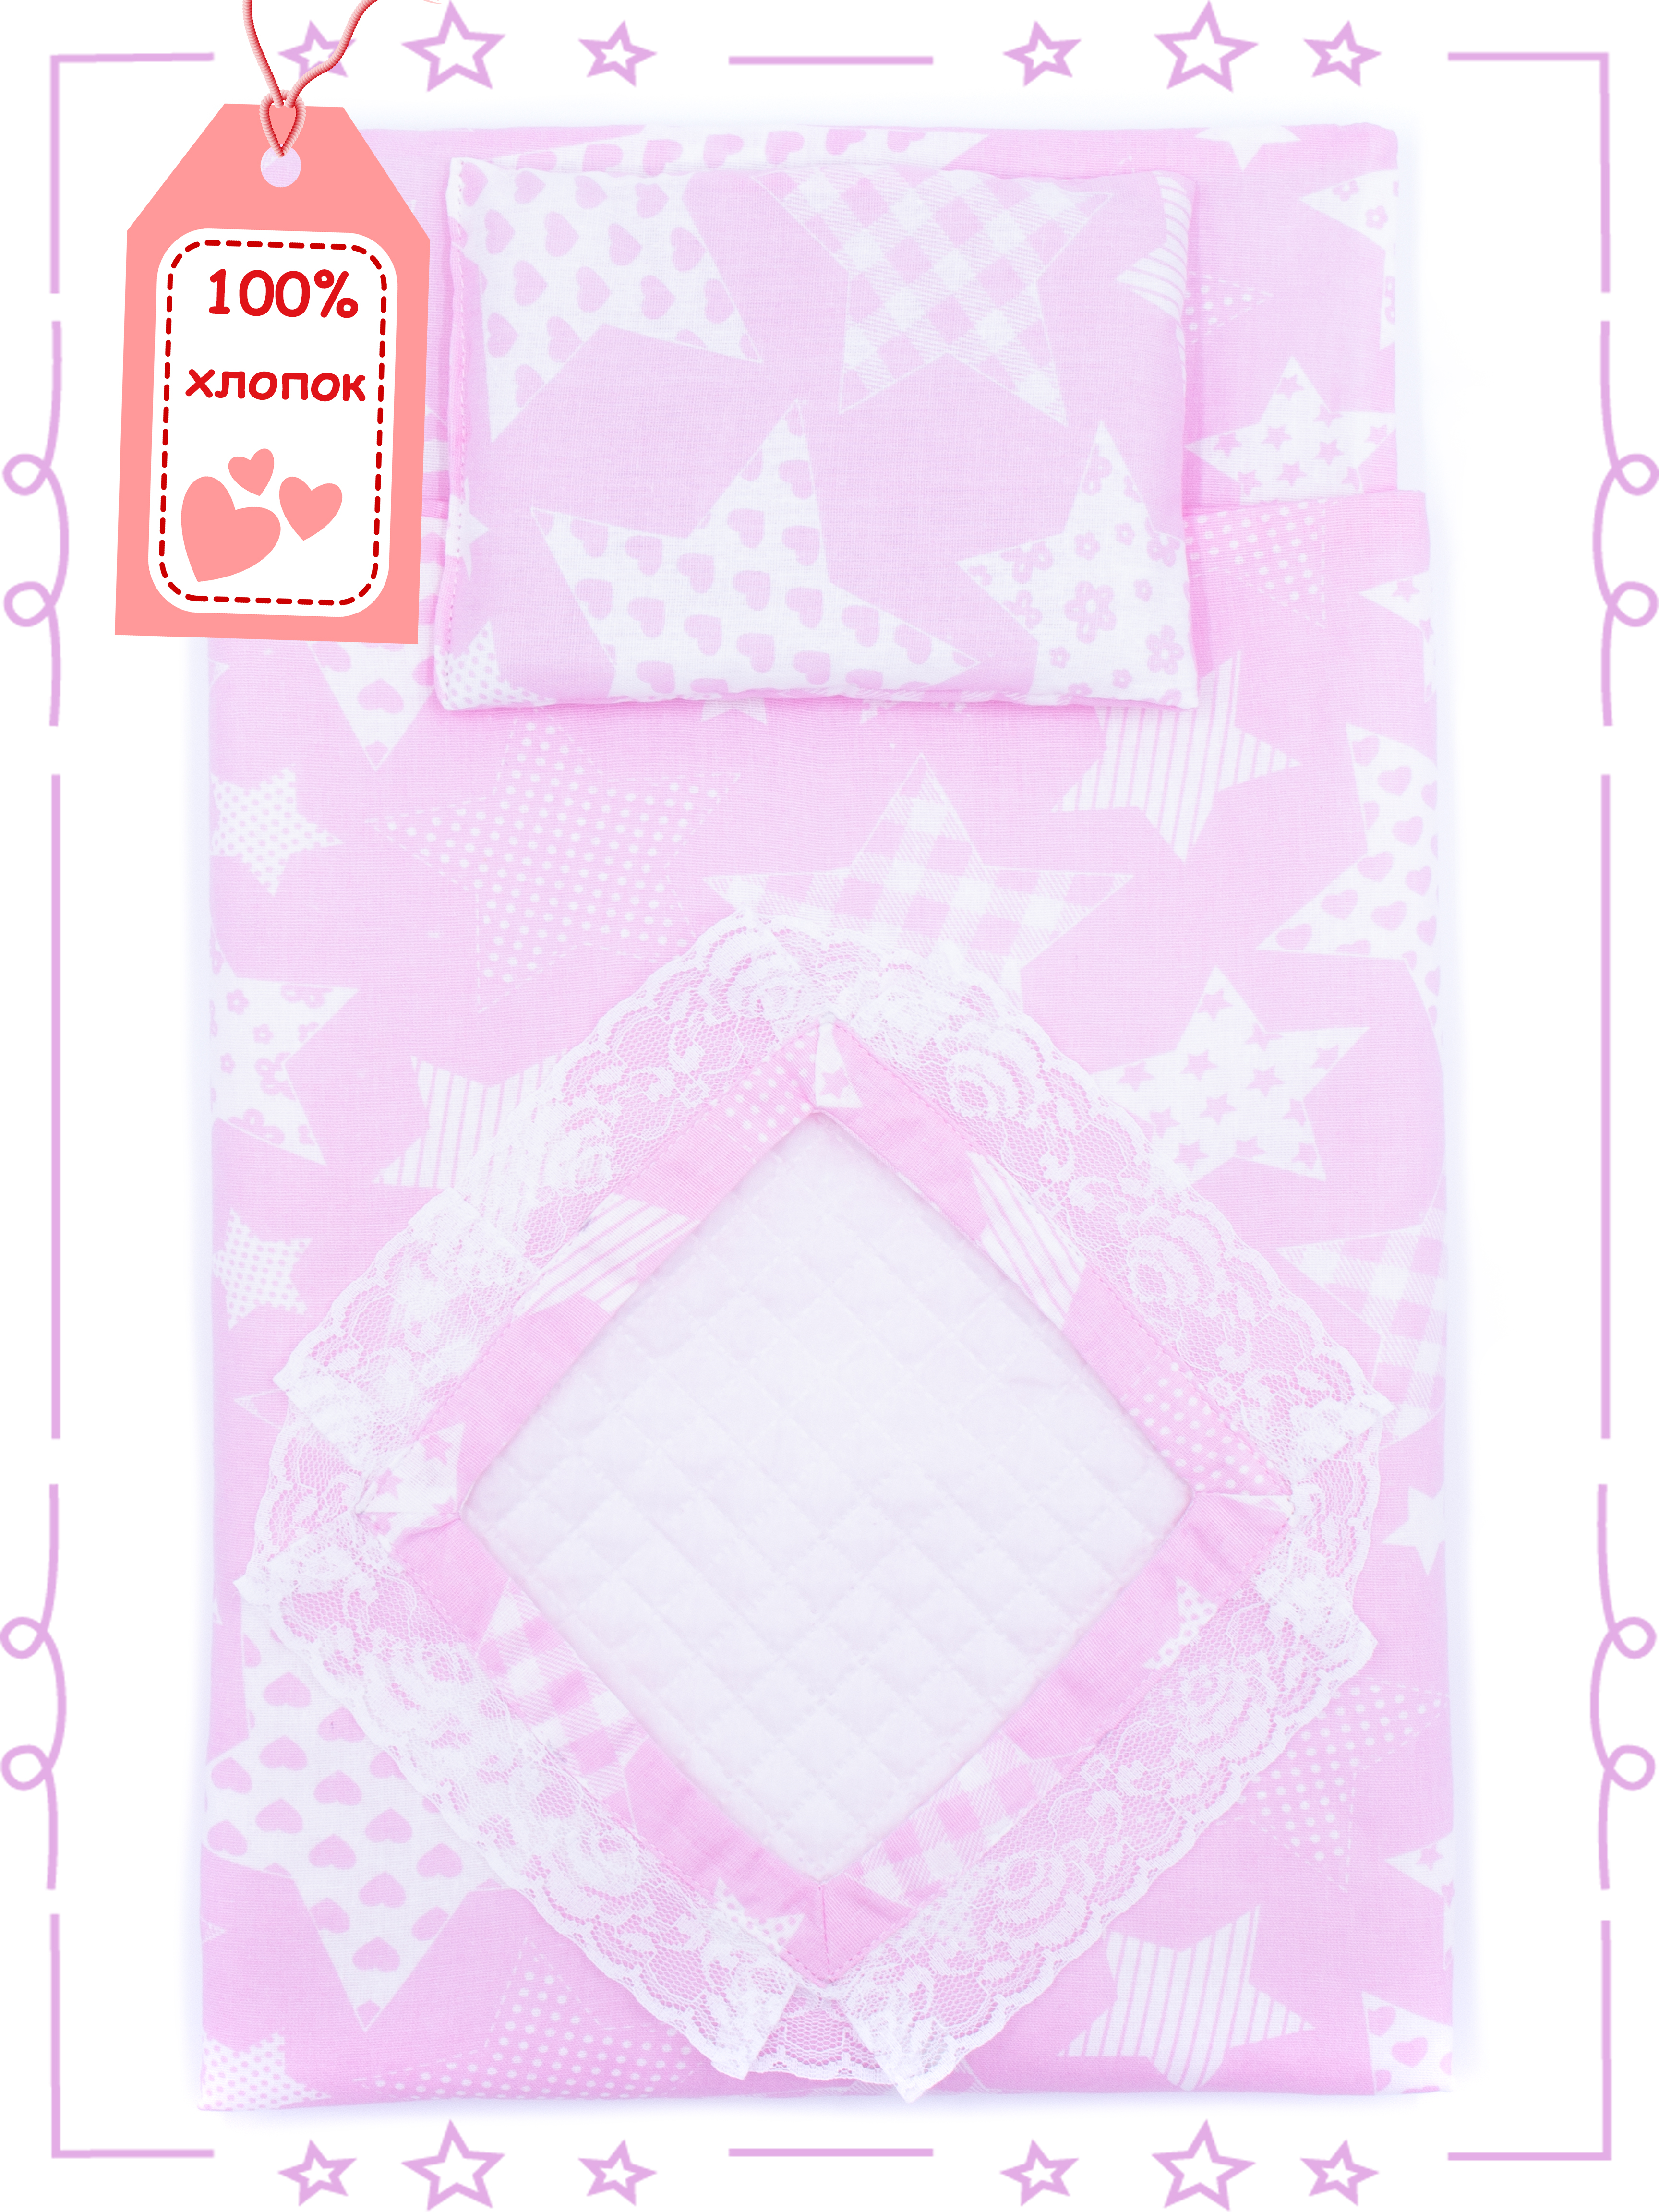 Спальный комплект Модница для пупса 43-48 см 6109 бледно-розовый 6109бледно-розовый - фото 1